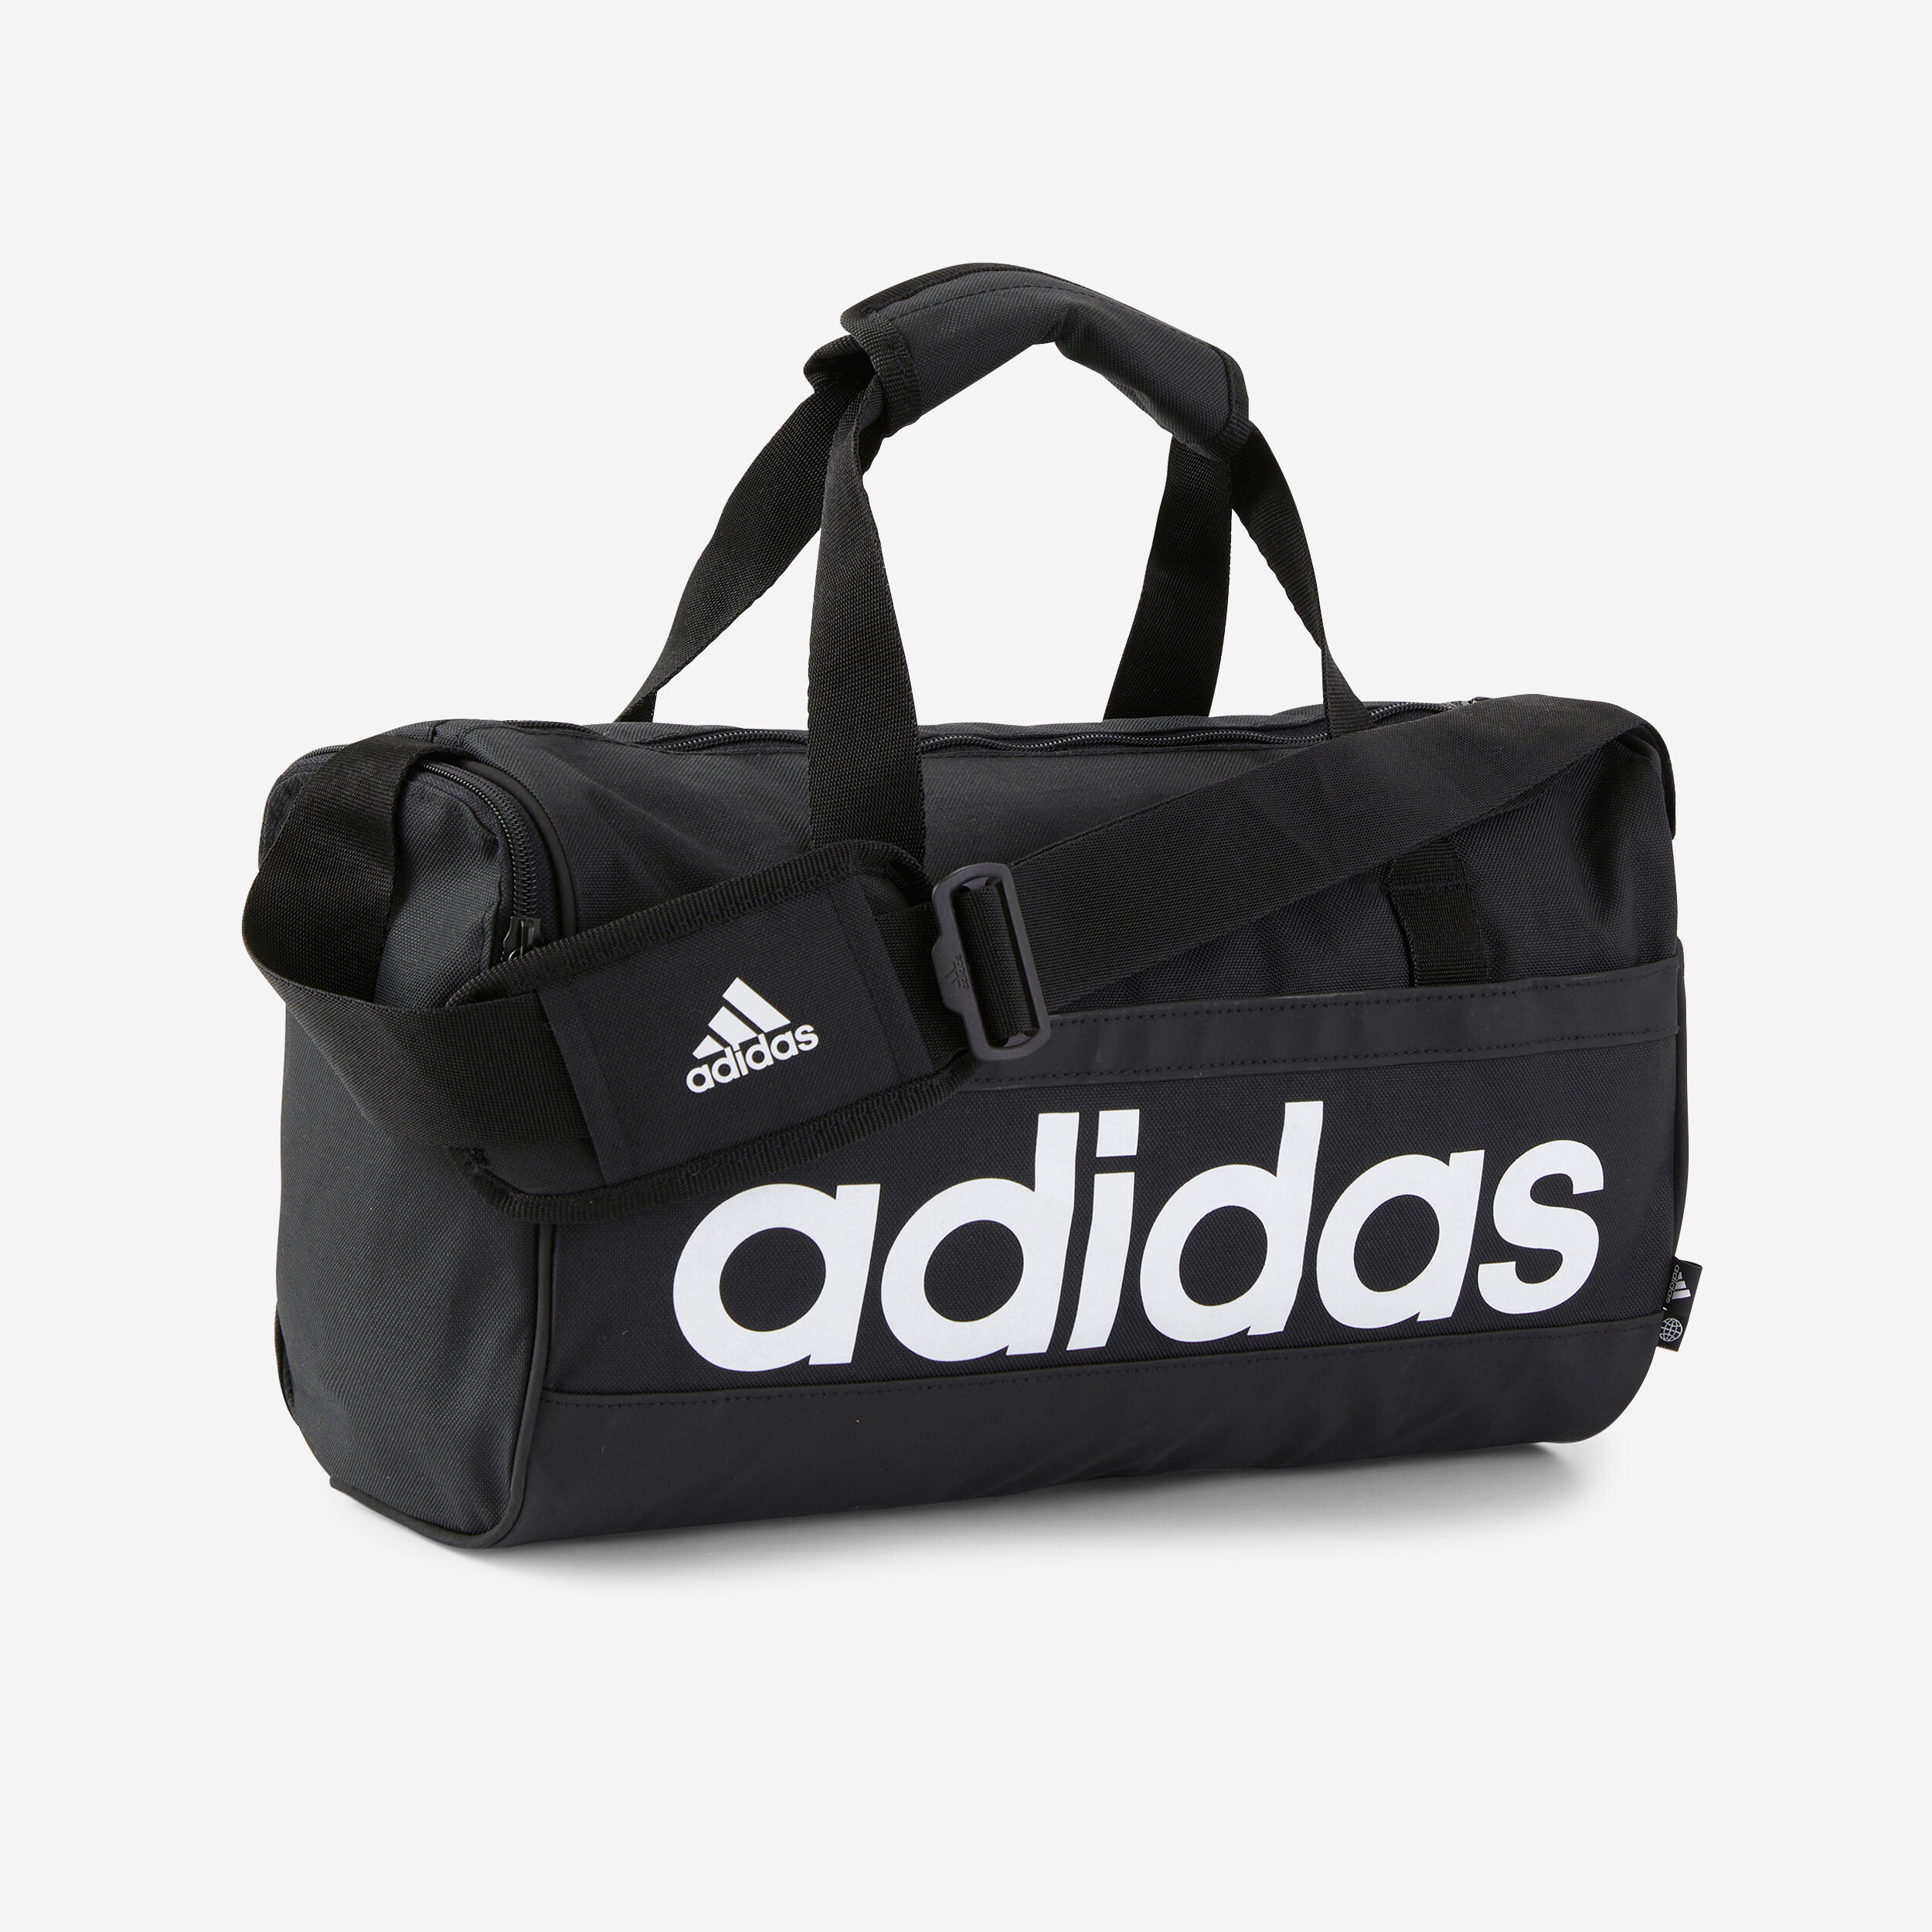 ADIDAS XS Duffel Bag - Black/White